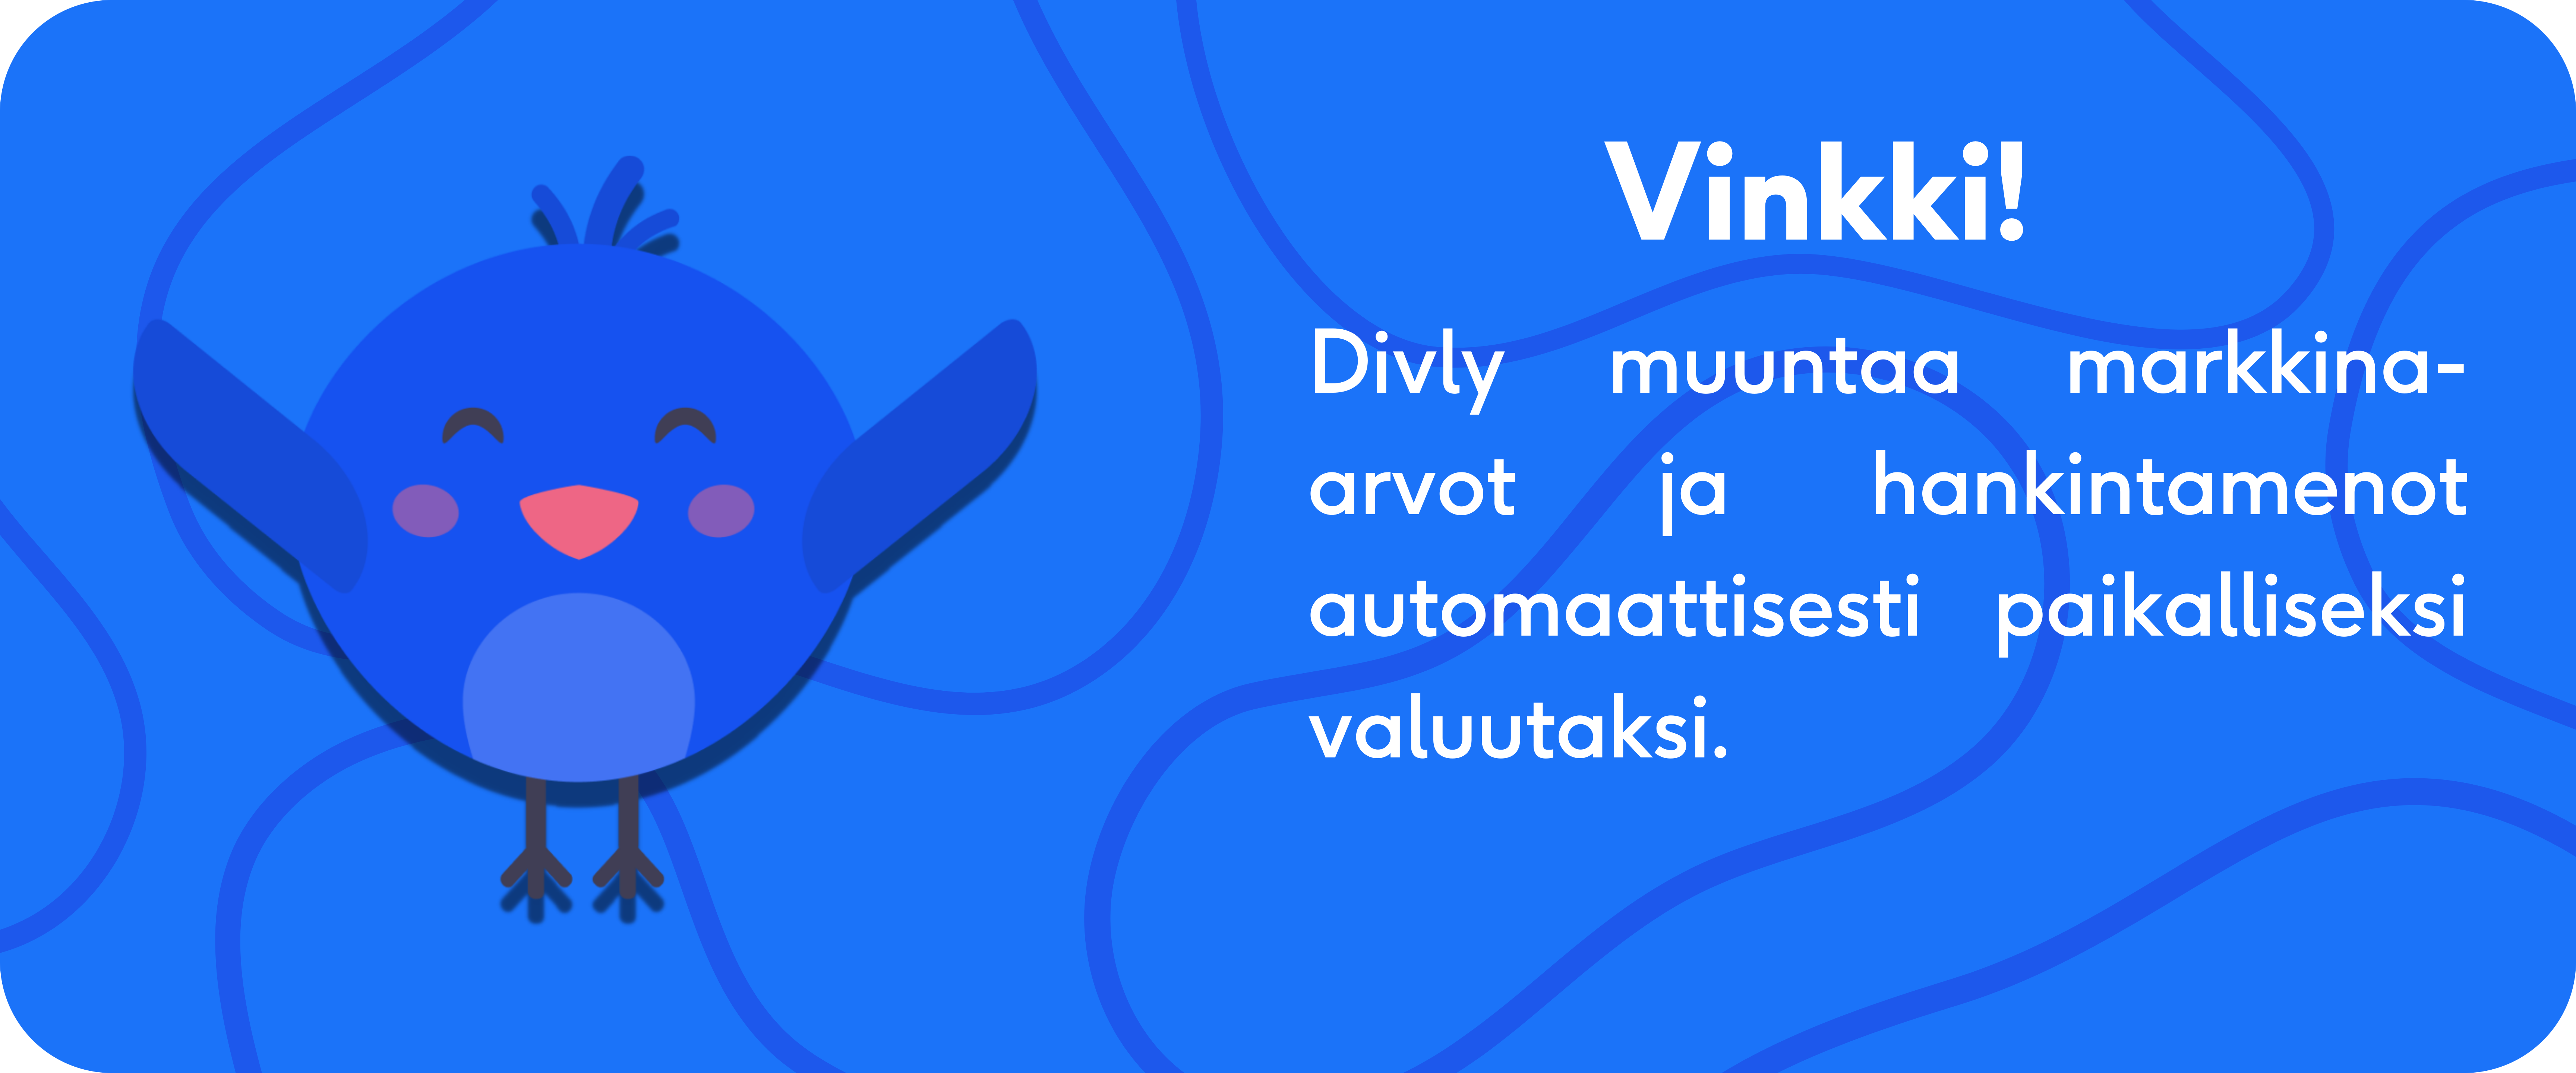 Divly muuntaa markkina-arvot ja hankintamenot automaattisesti paikalliseksi valuutaksi.